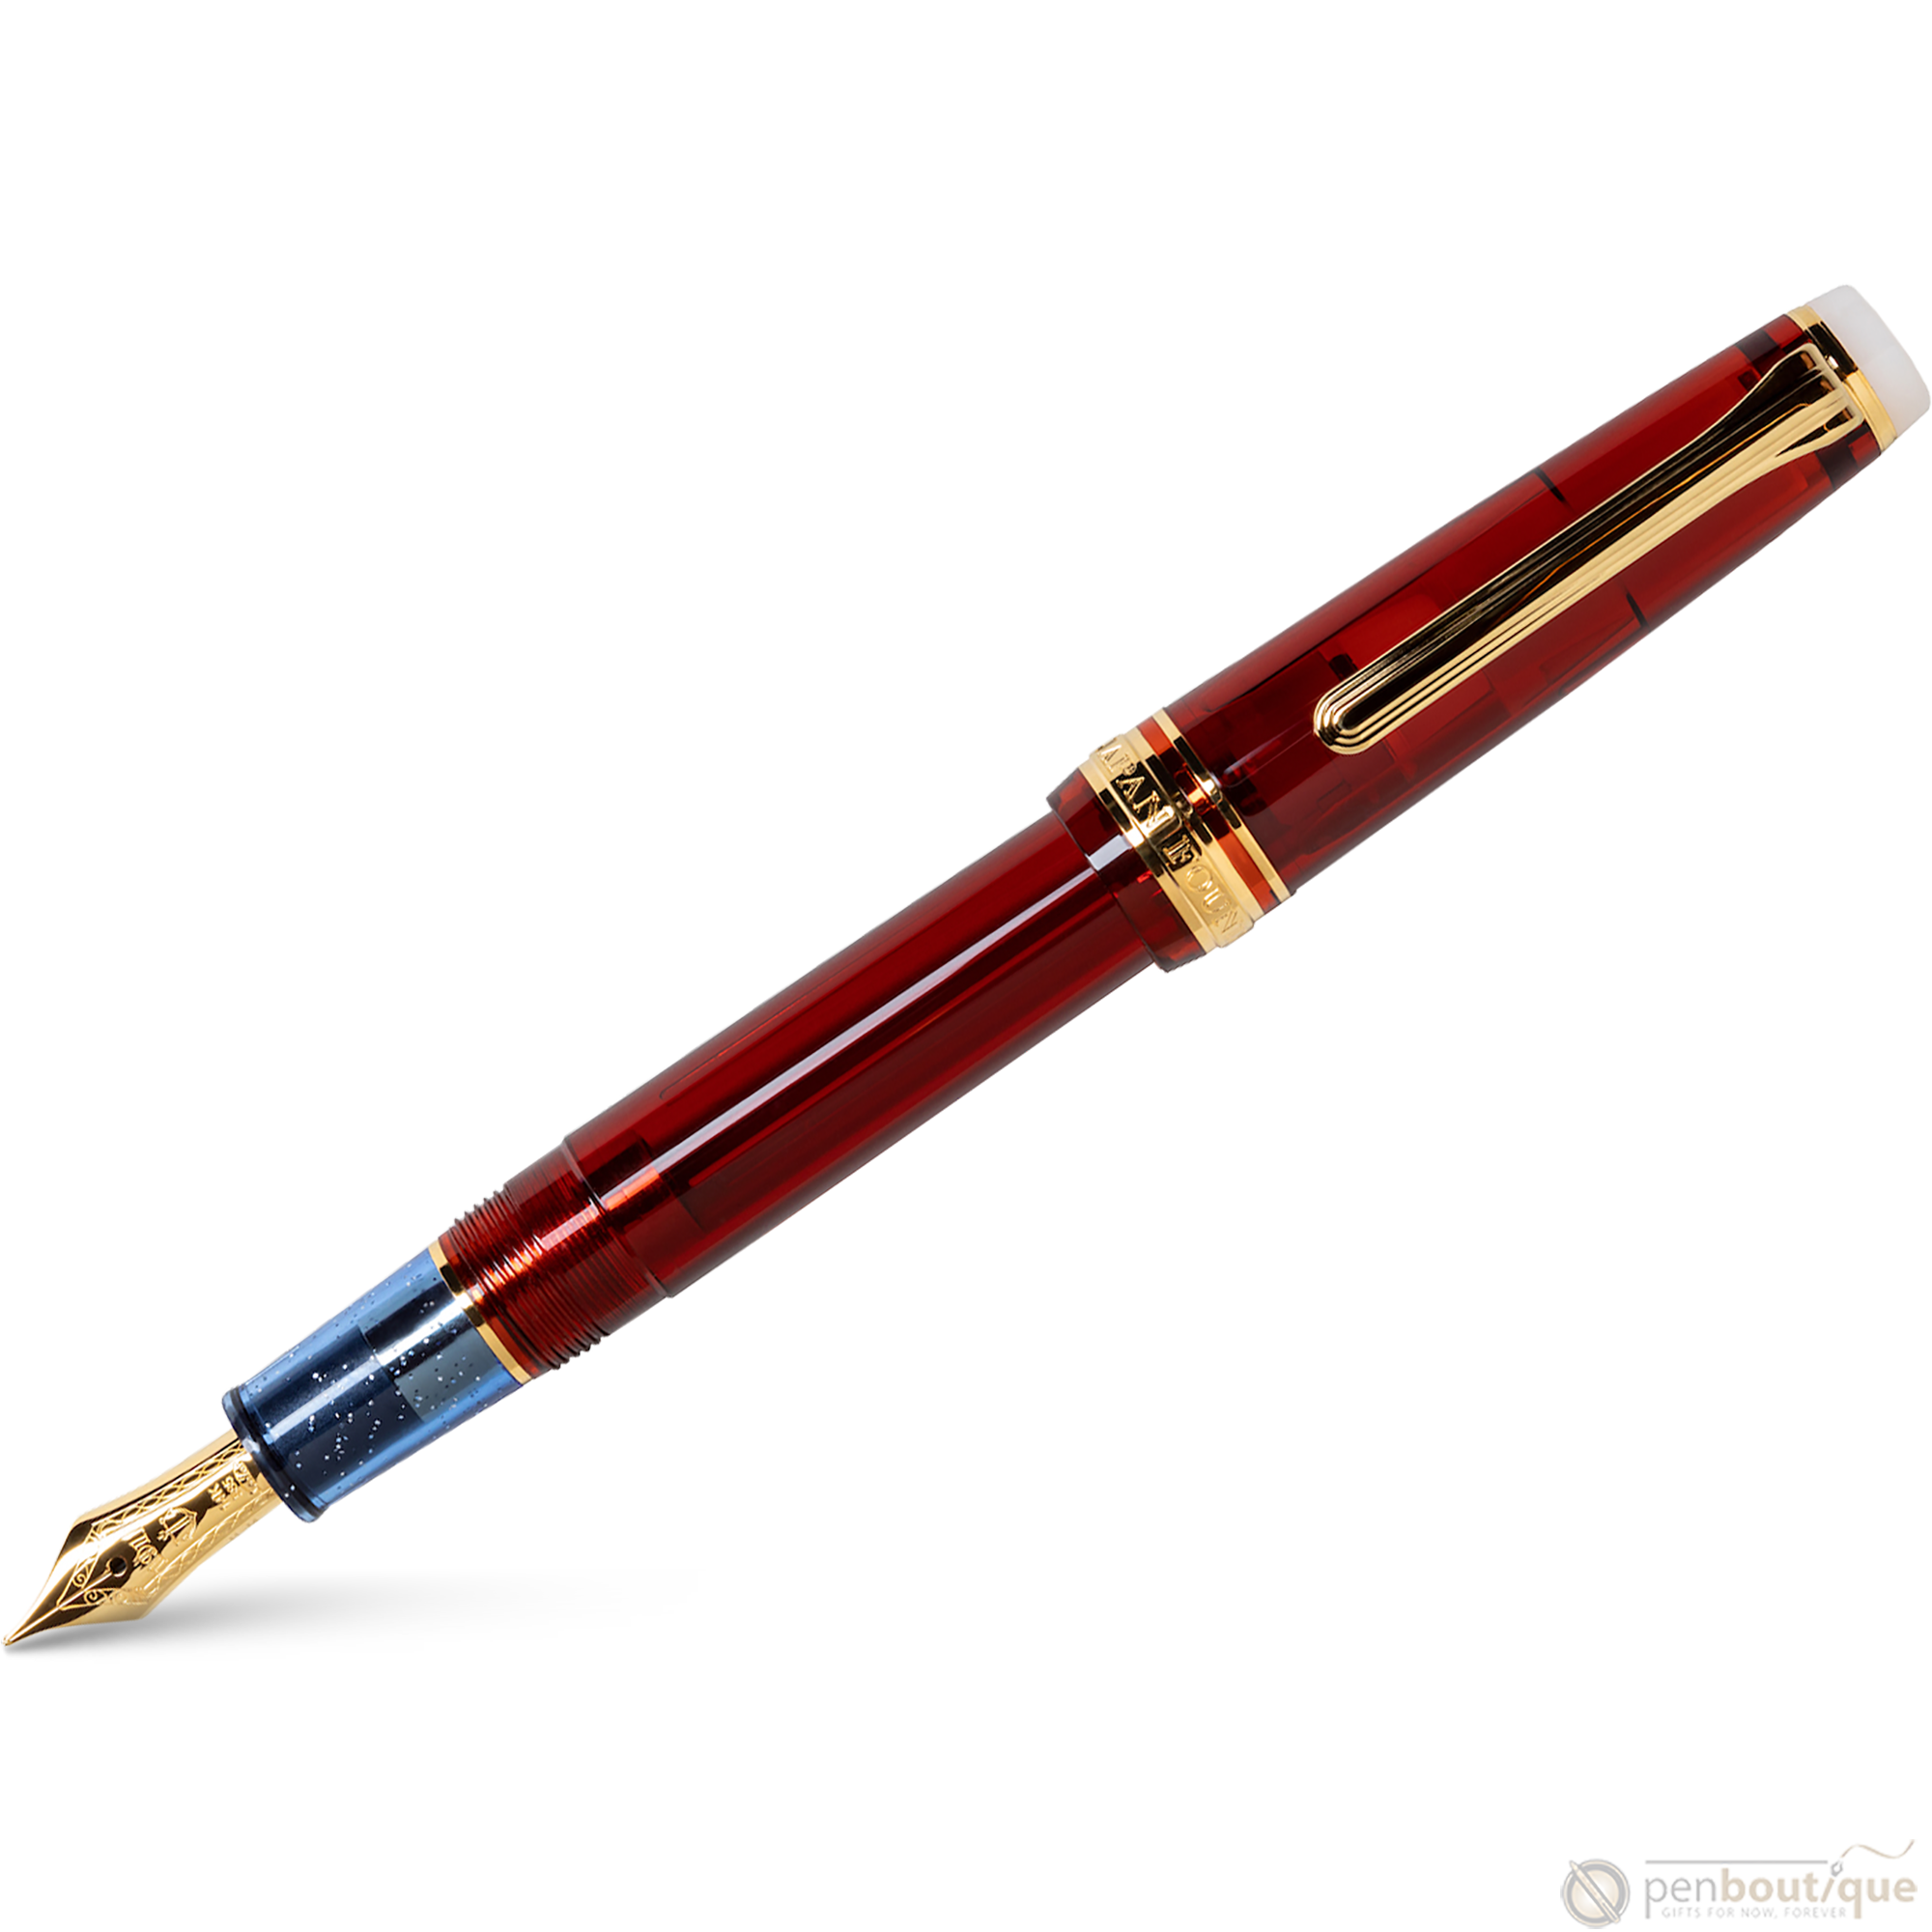 Sailor Professional Gear Fountain Pen - Go USA - Slim (North America Exclusive)-Pen Boutique Ltd